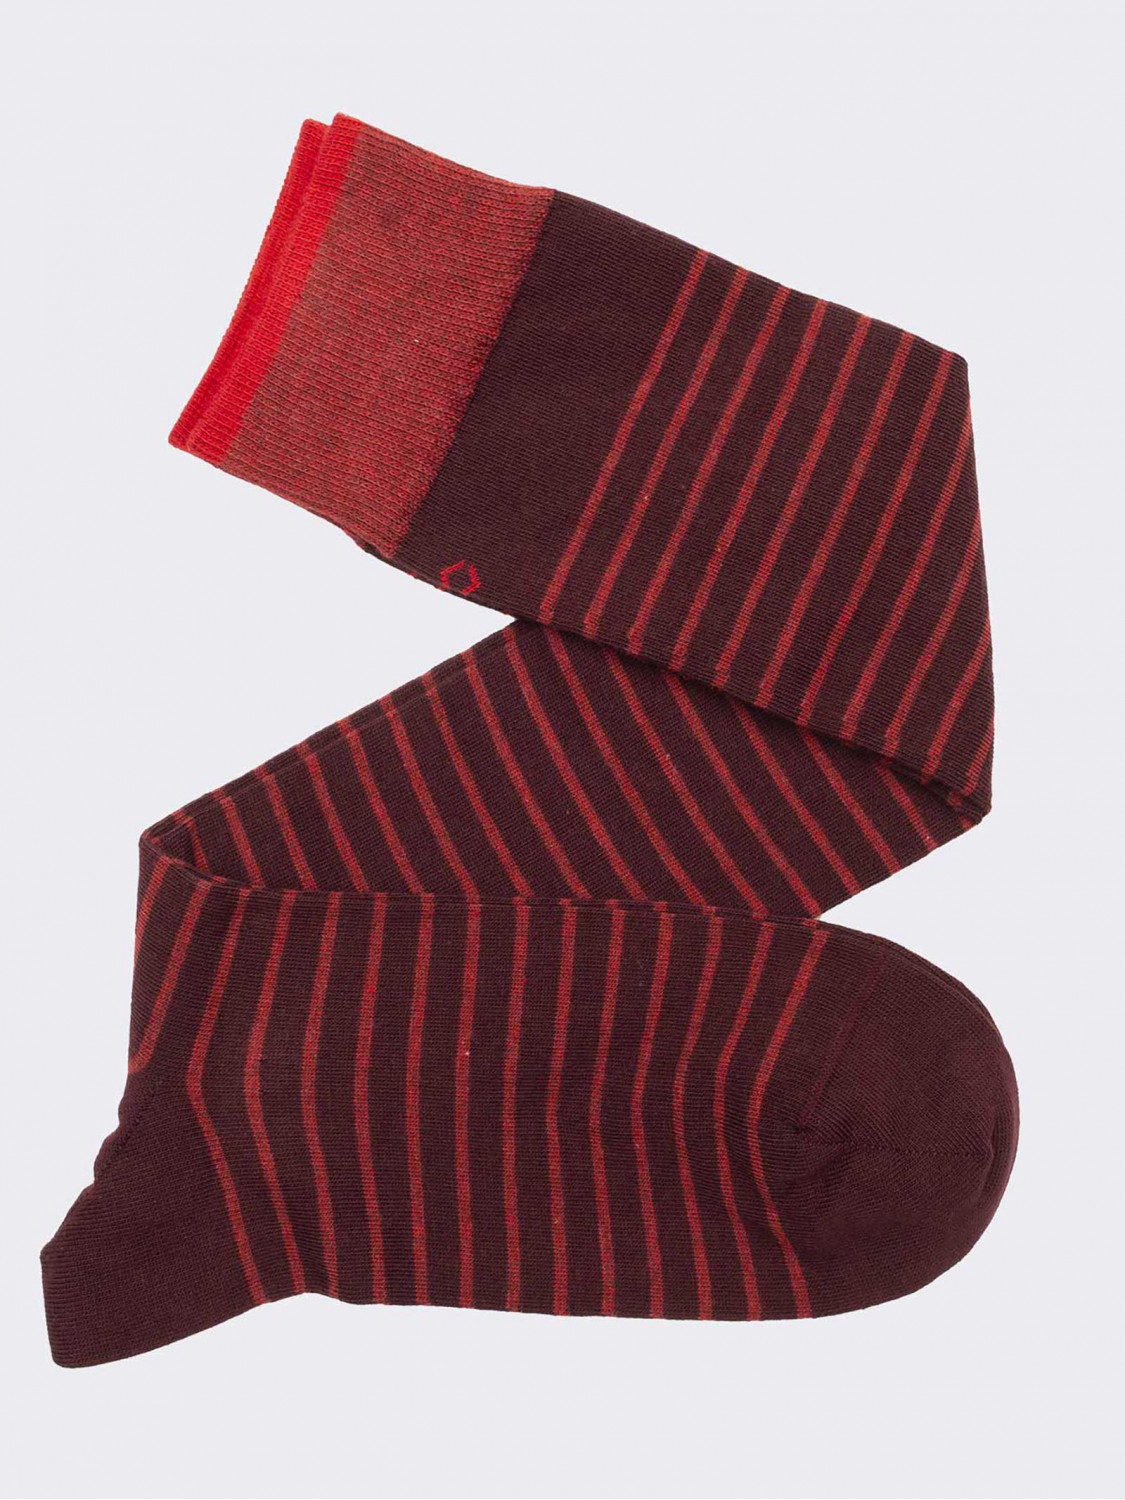 Long sock, striped pattern in warm cotton